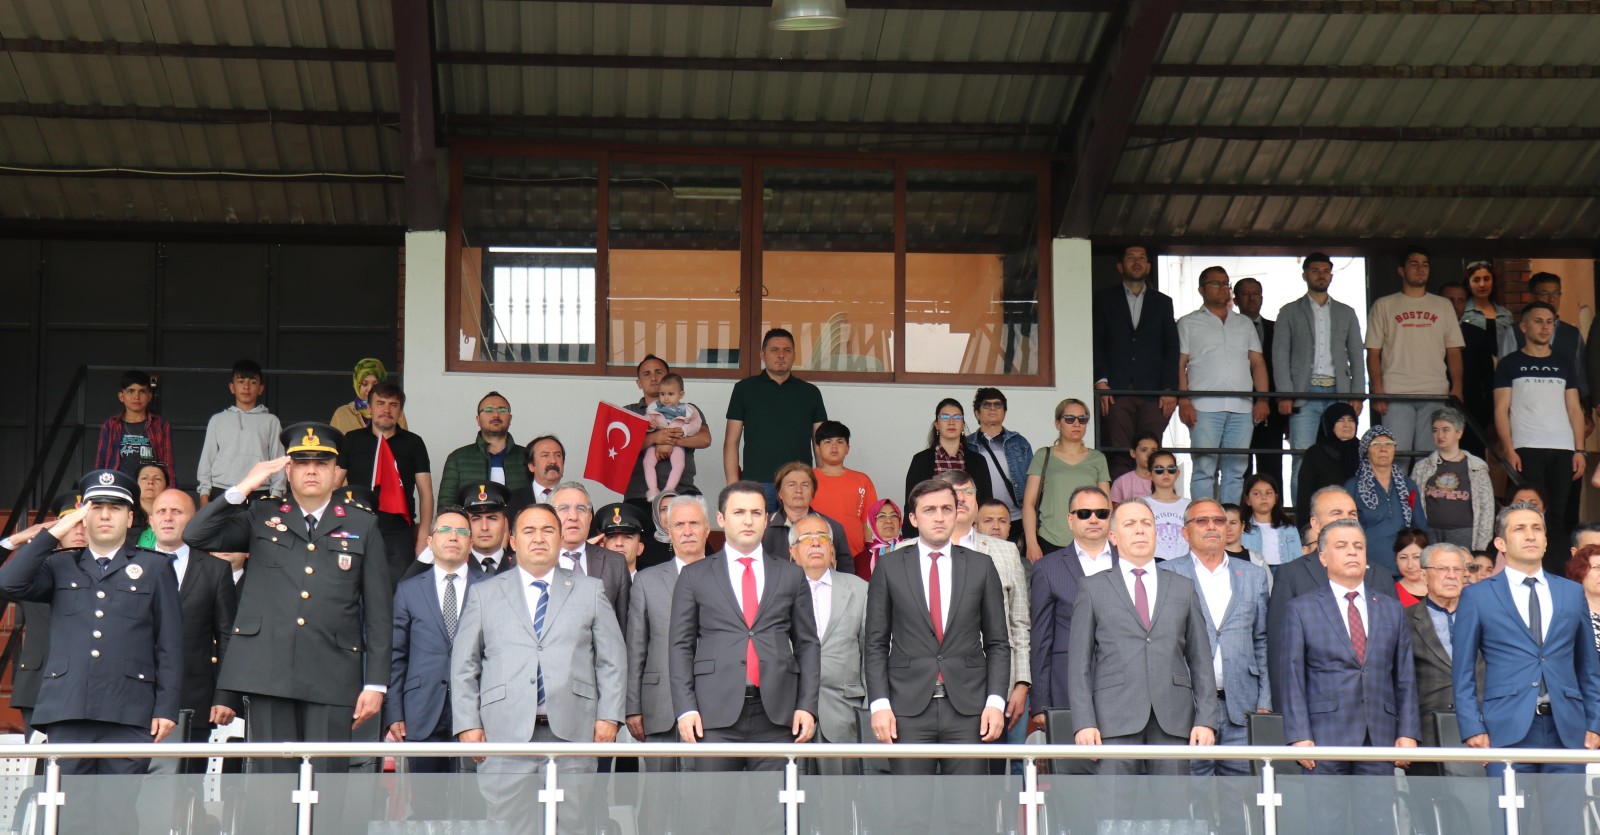 19 Mayıs Atatürk’ü Anma Gençlik ve Spor Bayramı tüm yurtta olduğu gibi Bozdoğan’da da törenle kutlandı.